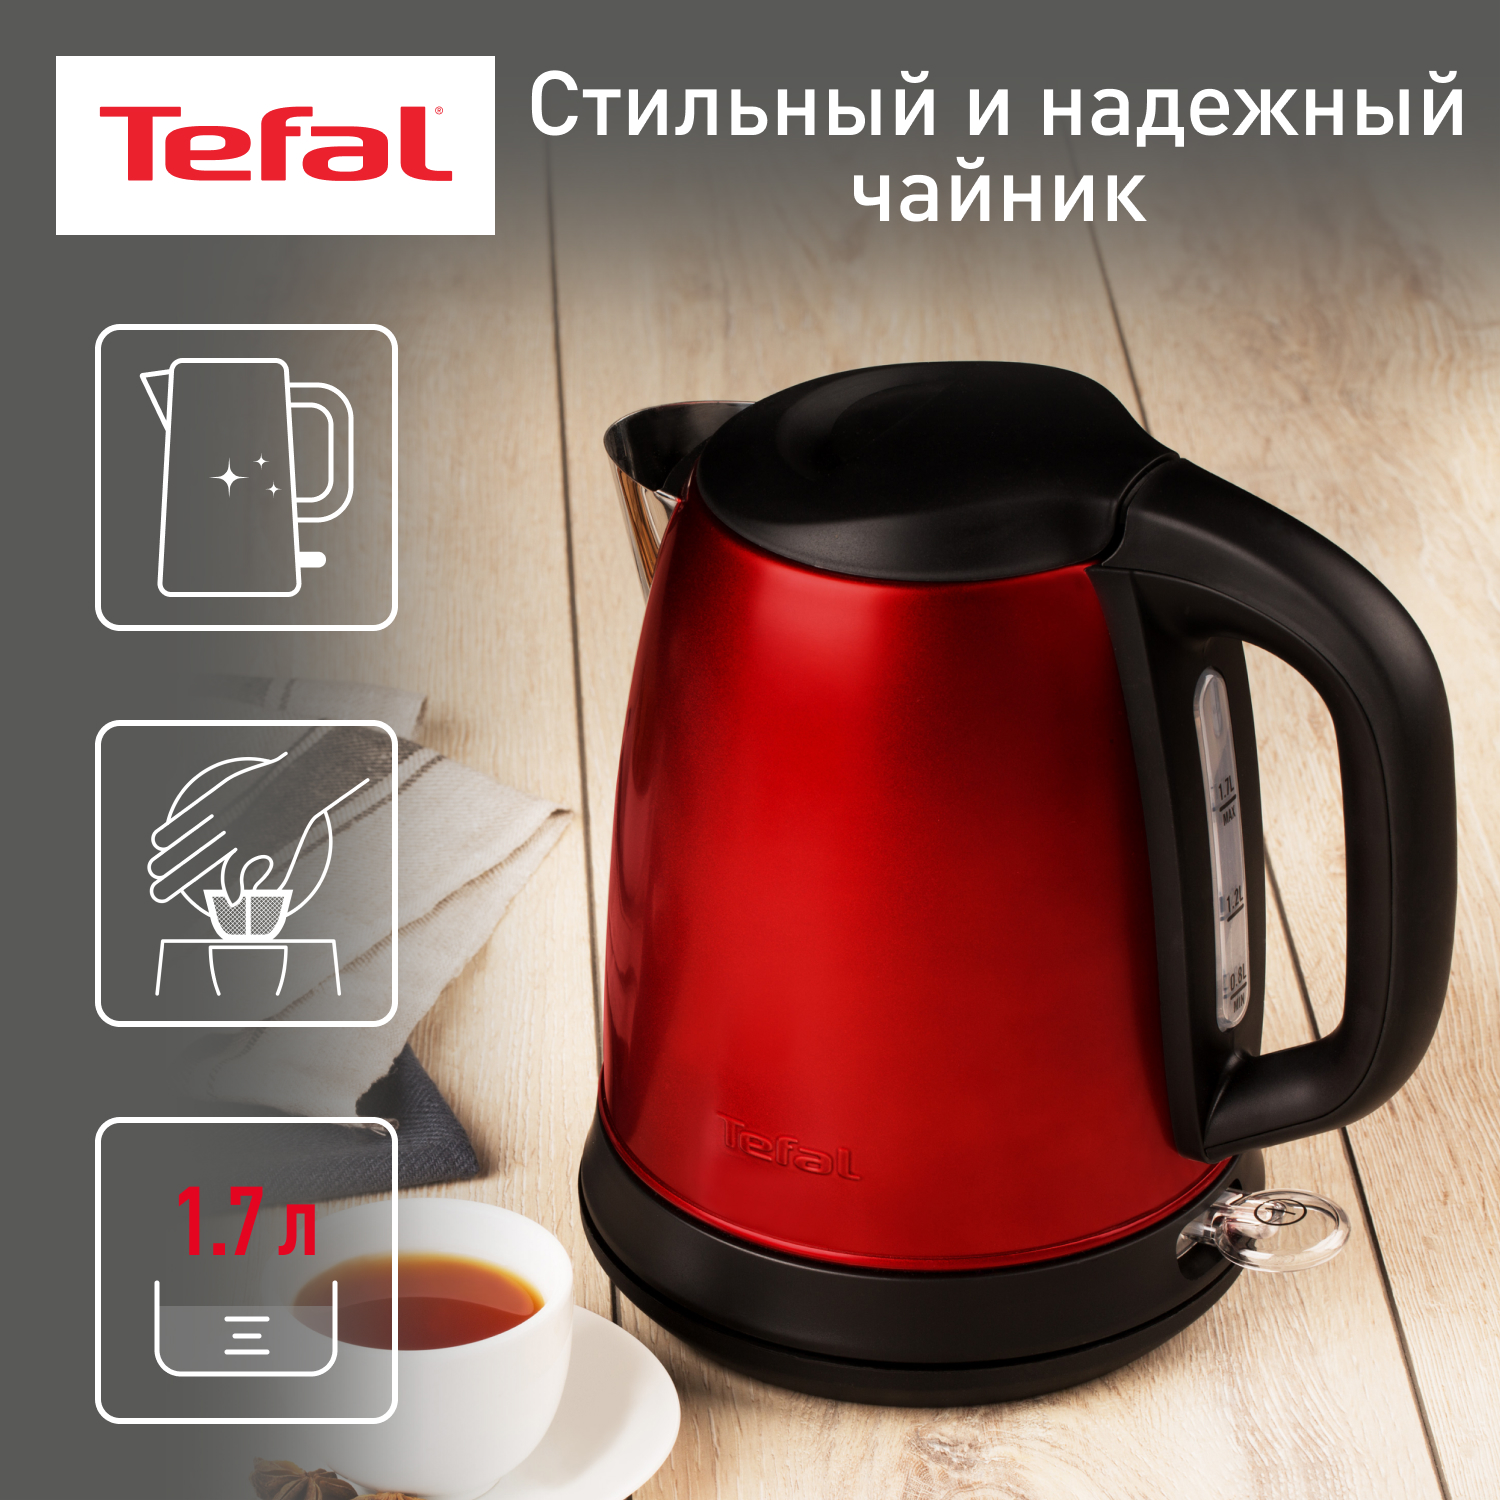 Чайник электрический Tefal Confidence KI270530, 1.7 л, красный/черный мольберт телескопический тренога металлический красный